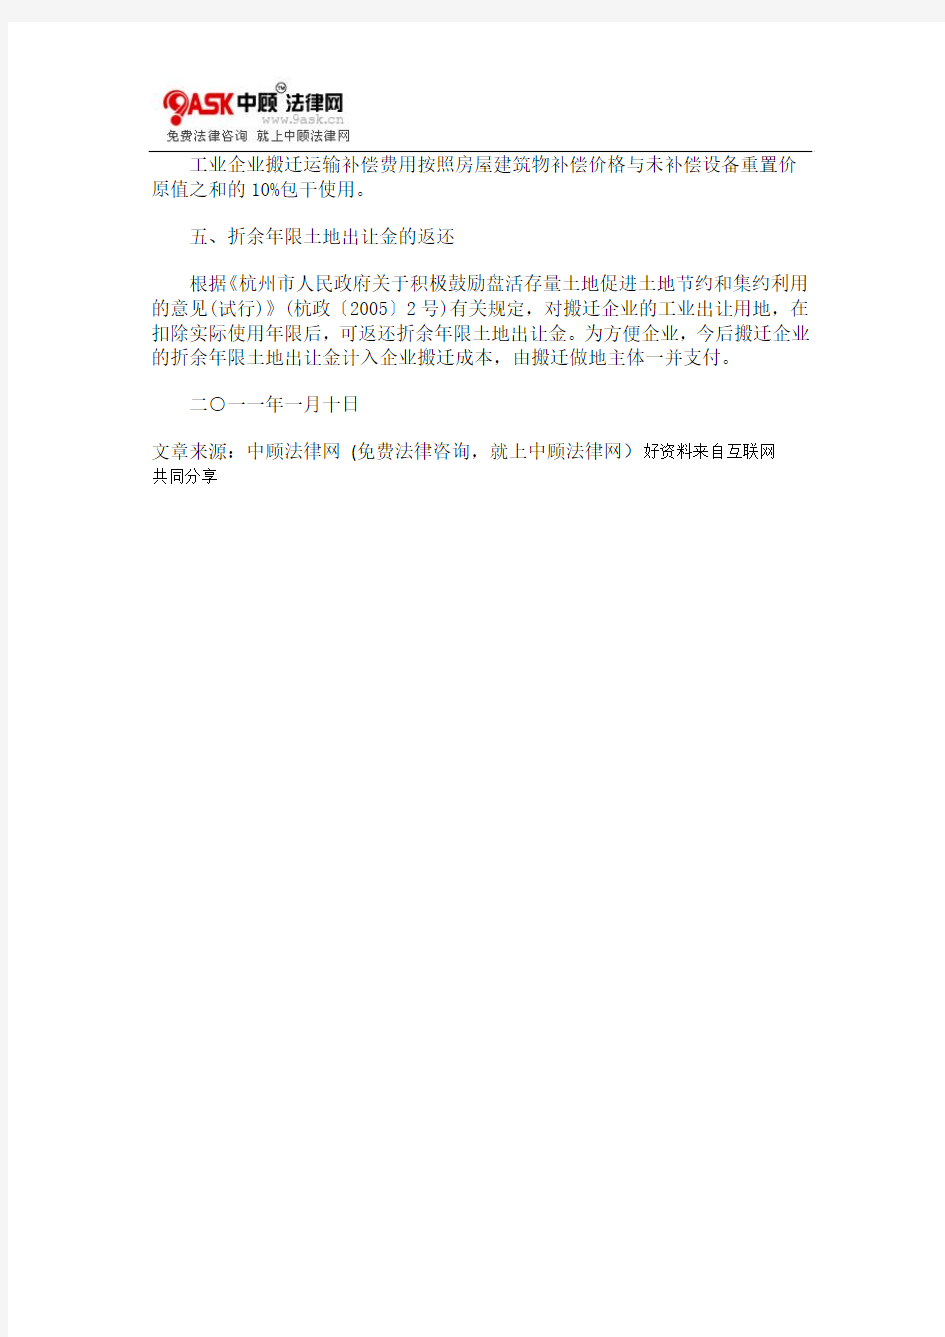 杭州市人0809民政府办公厅关于调整市区工业企业搬迁部分补偿标准的通知0806